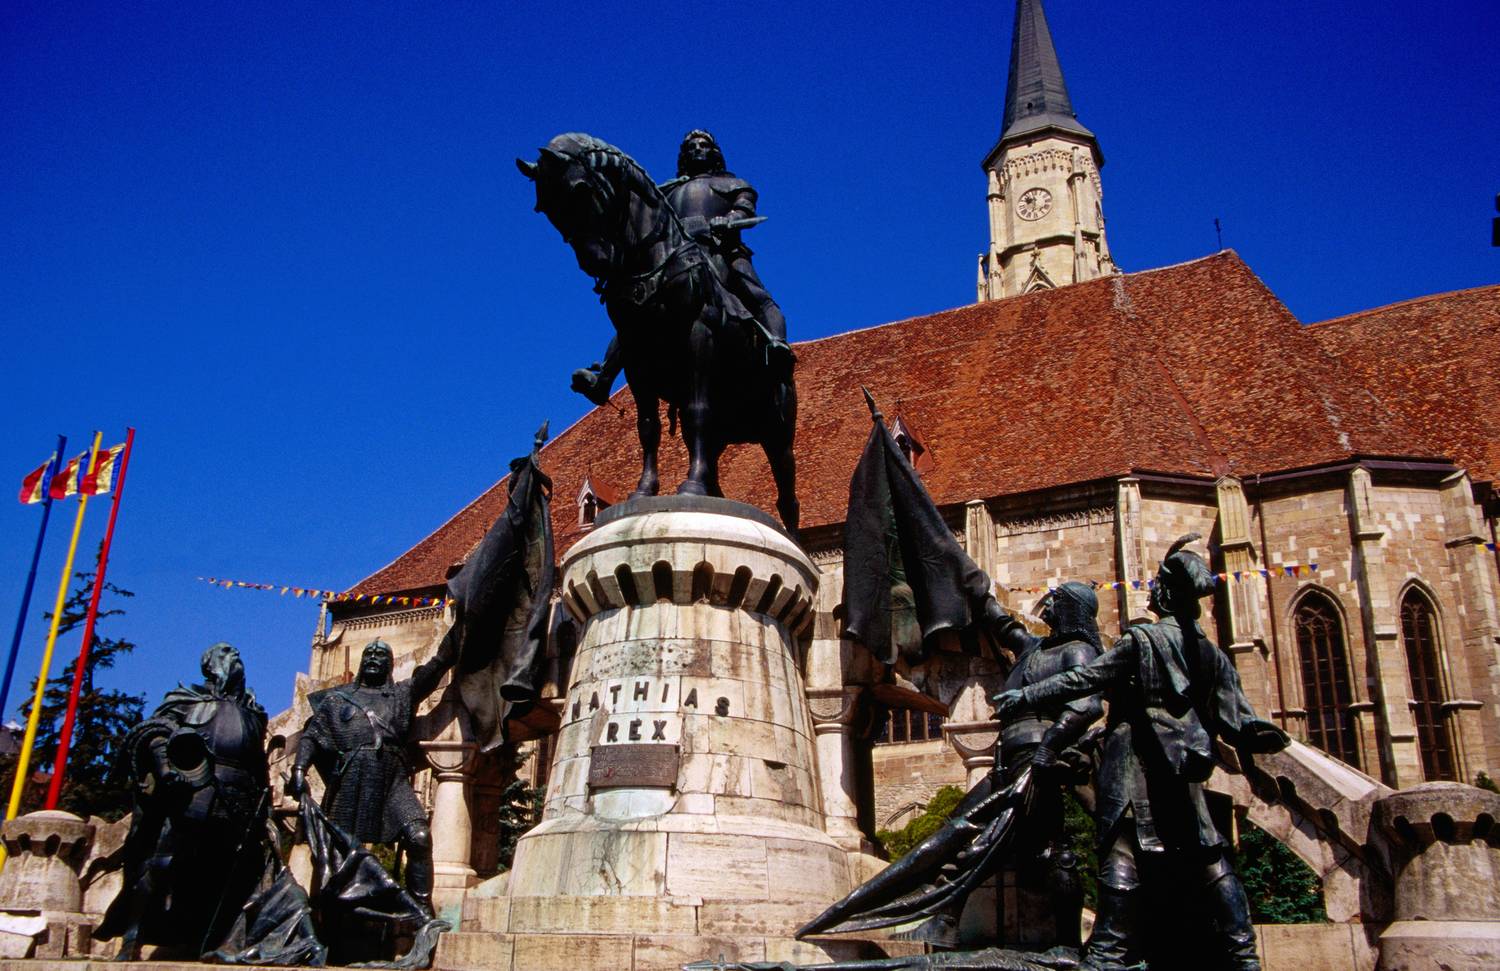 Kolozsvár legmeghatározóbb pontja és jelképe óvárosi főtere, a Piața Unirii, ahol a nagy múltú Szent Mihály-templom vagy Fadrusz János Mátyás királyról készített emlékműve magasodik.